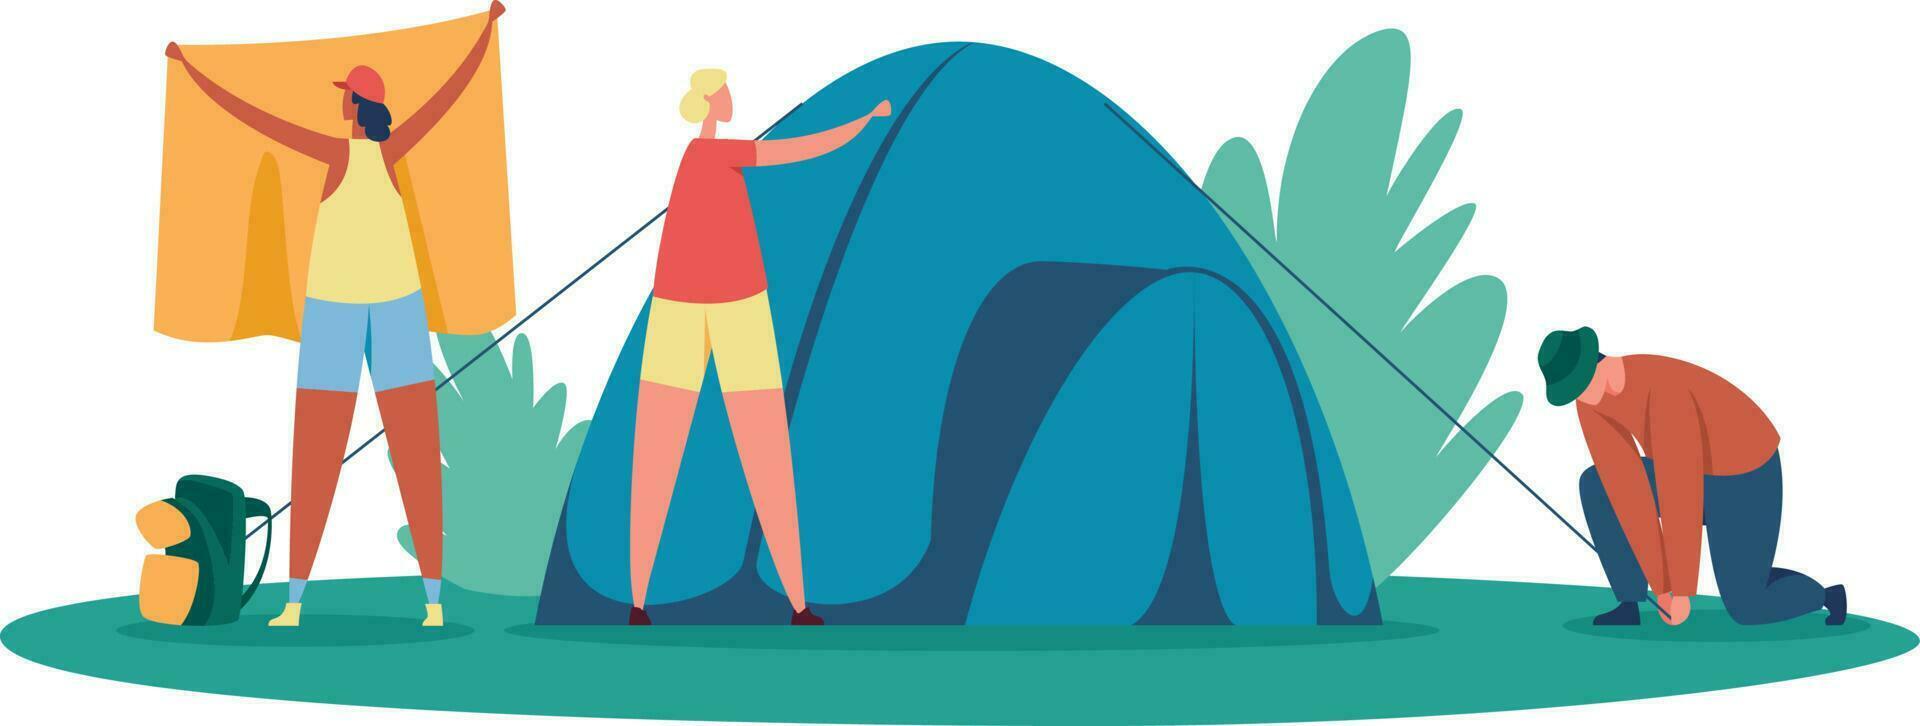 turisti gruppo ambientazione tenda per campo, all'aperto riposo vettore